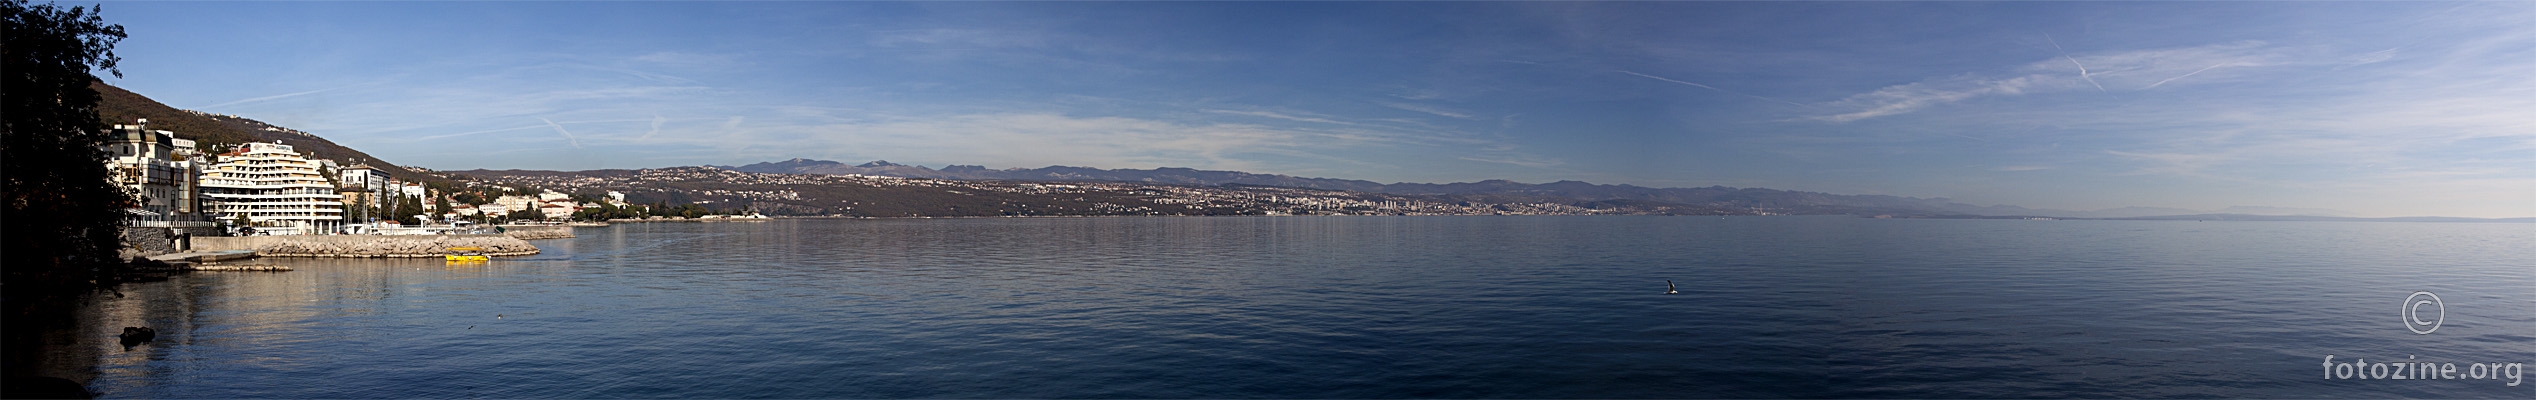 Opatija - Rijeka 11/2011